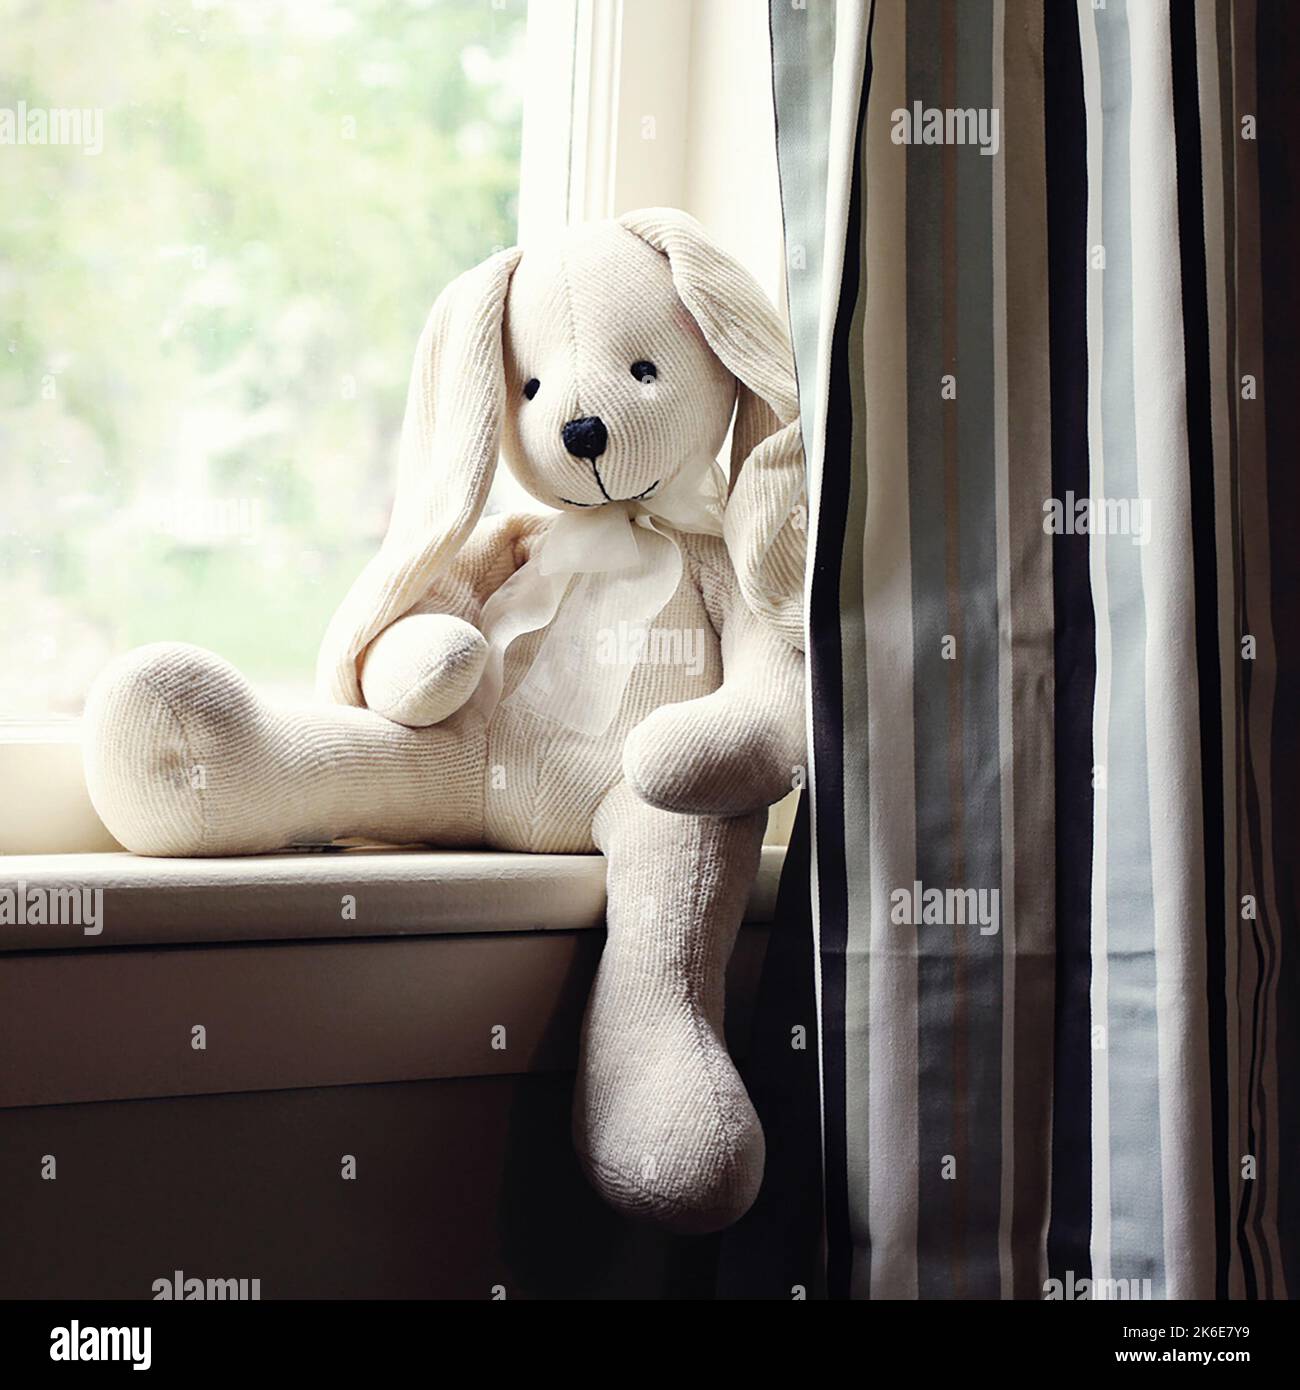 Un conejo de peluche blanco y crema mantiene el reloj sentado en la ventana con luz exterior Foto de stock